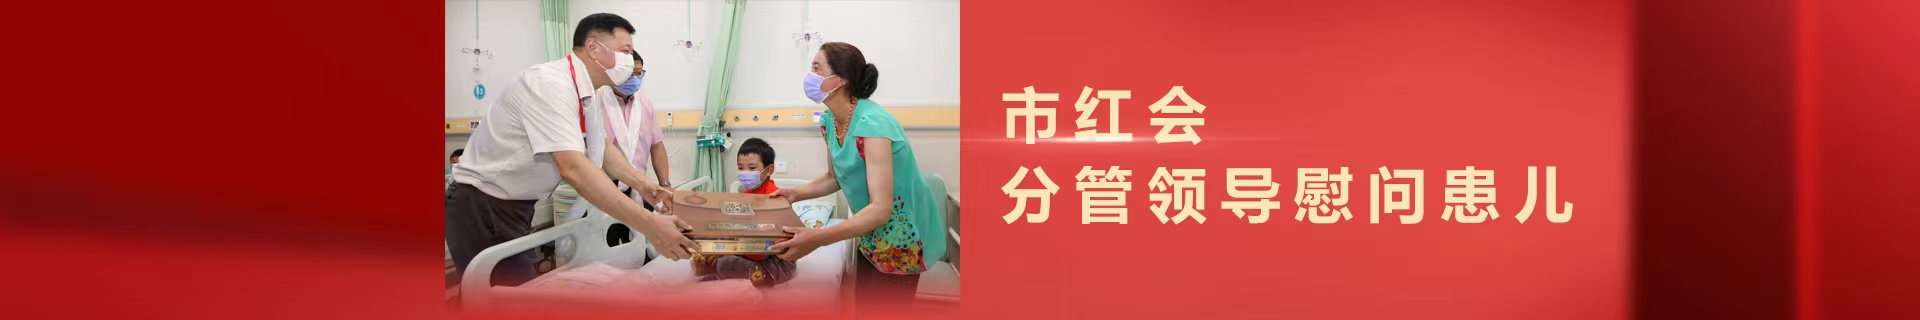 重庆市儿童医疗救助基金会